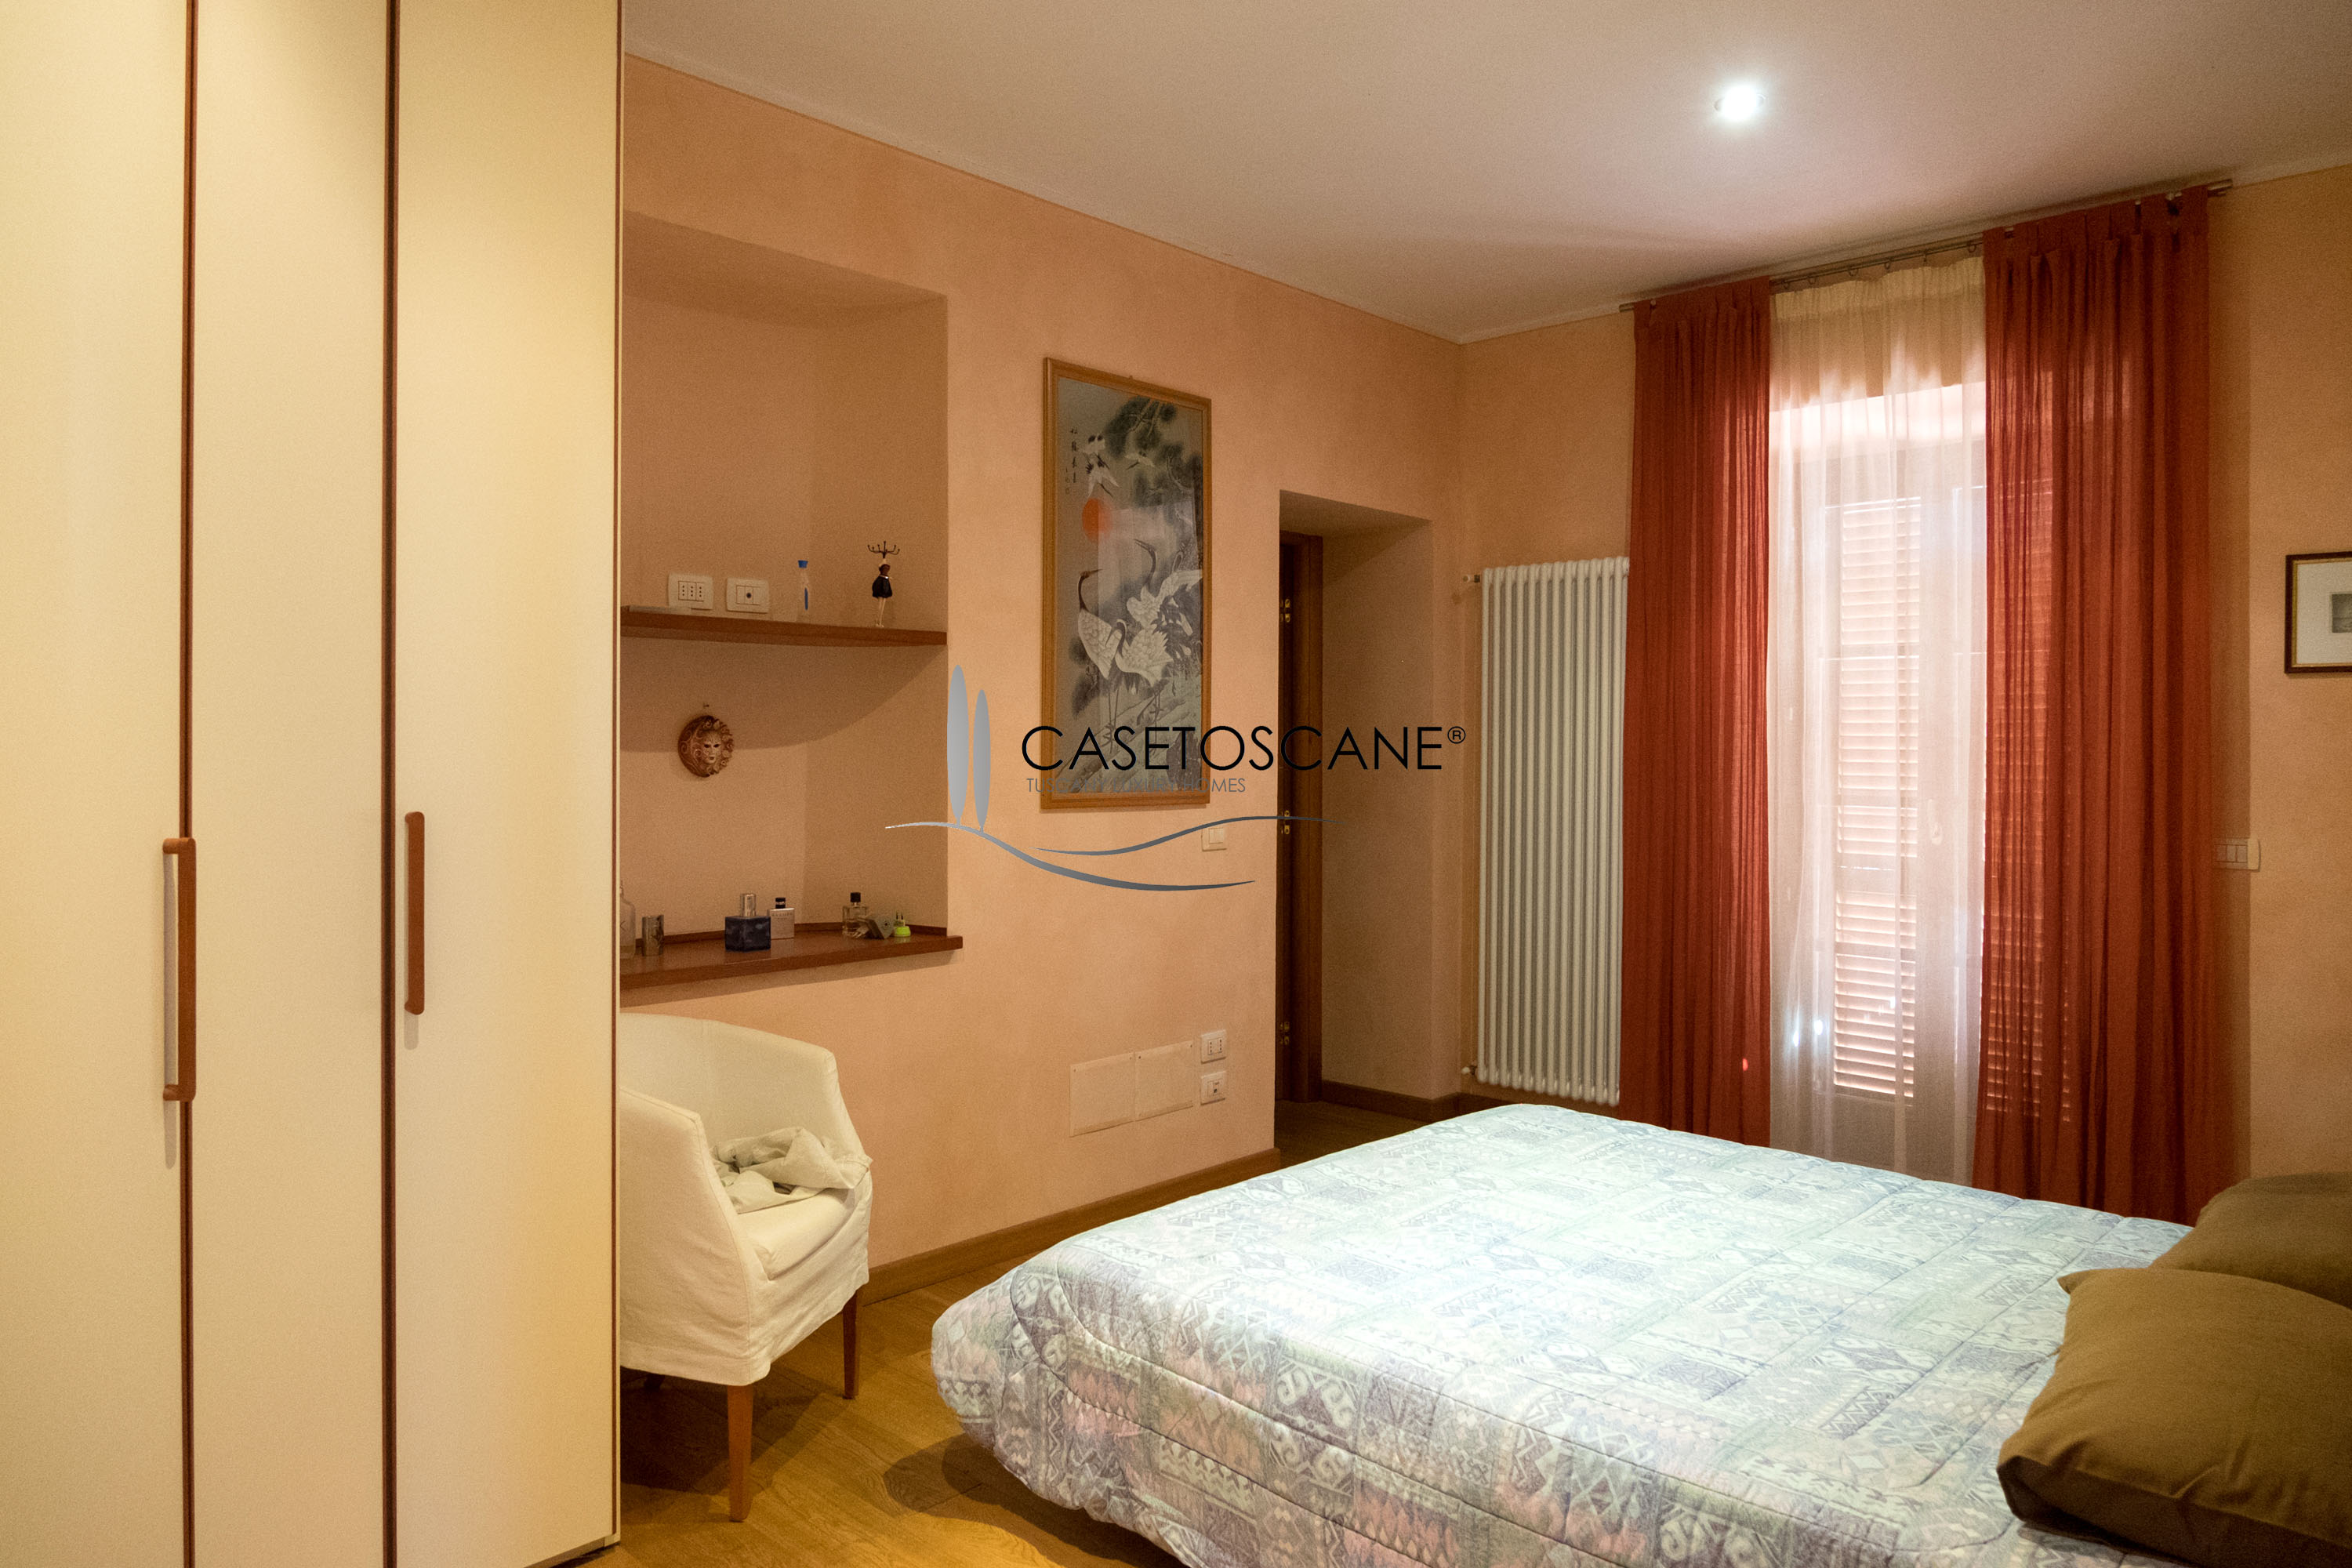 3020 - Appartamento ristrutturato di mq.90 con due camere e due bagni e magnifica terrazza di mq.260 a ridosso del centro storico di Lucignano (AR).